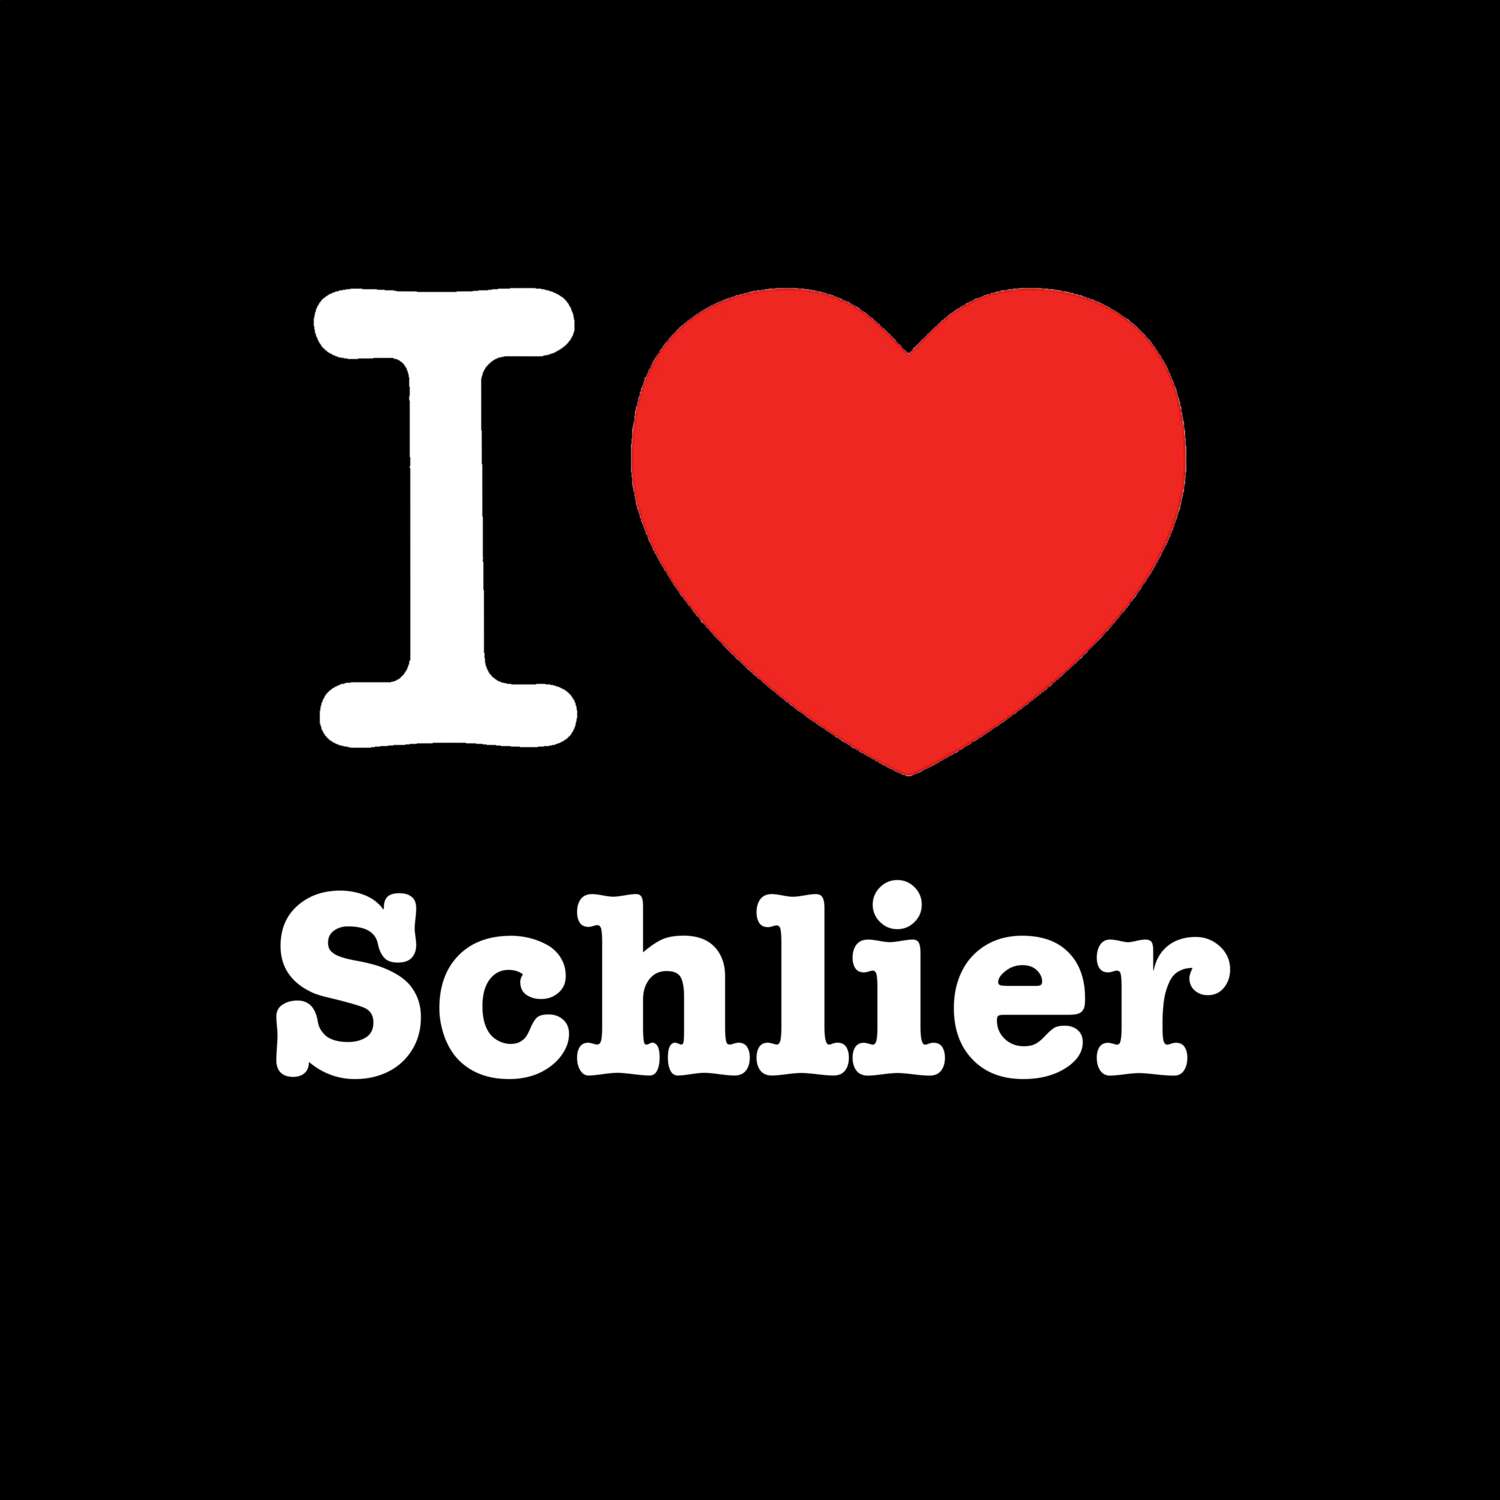 Schlier T-Shirt »I love«